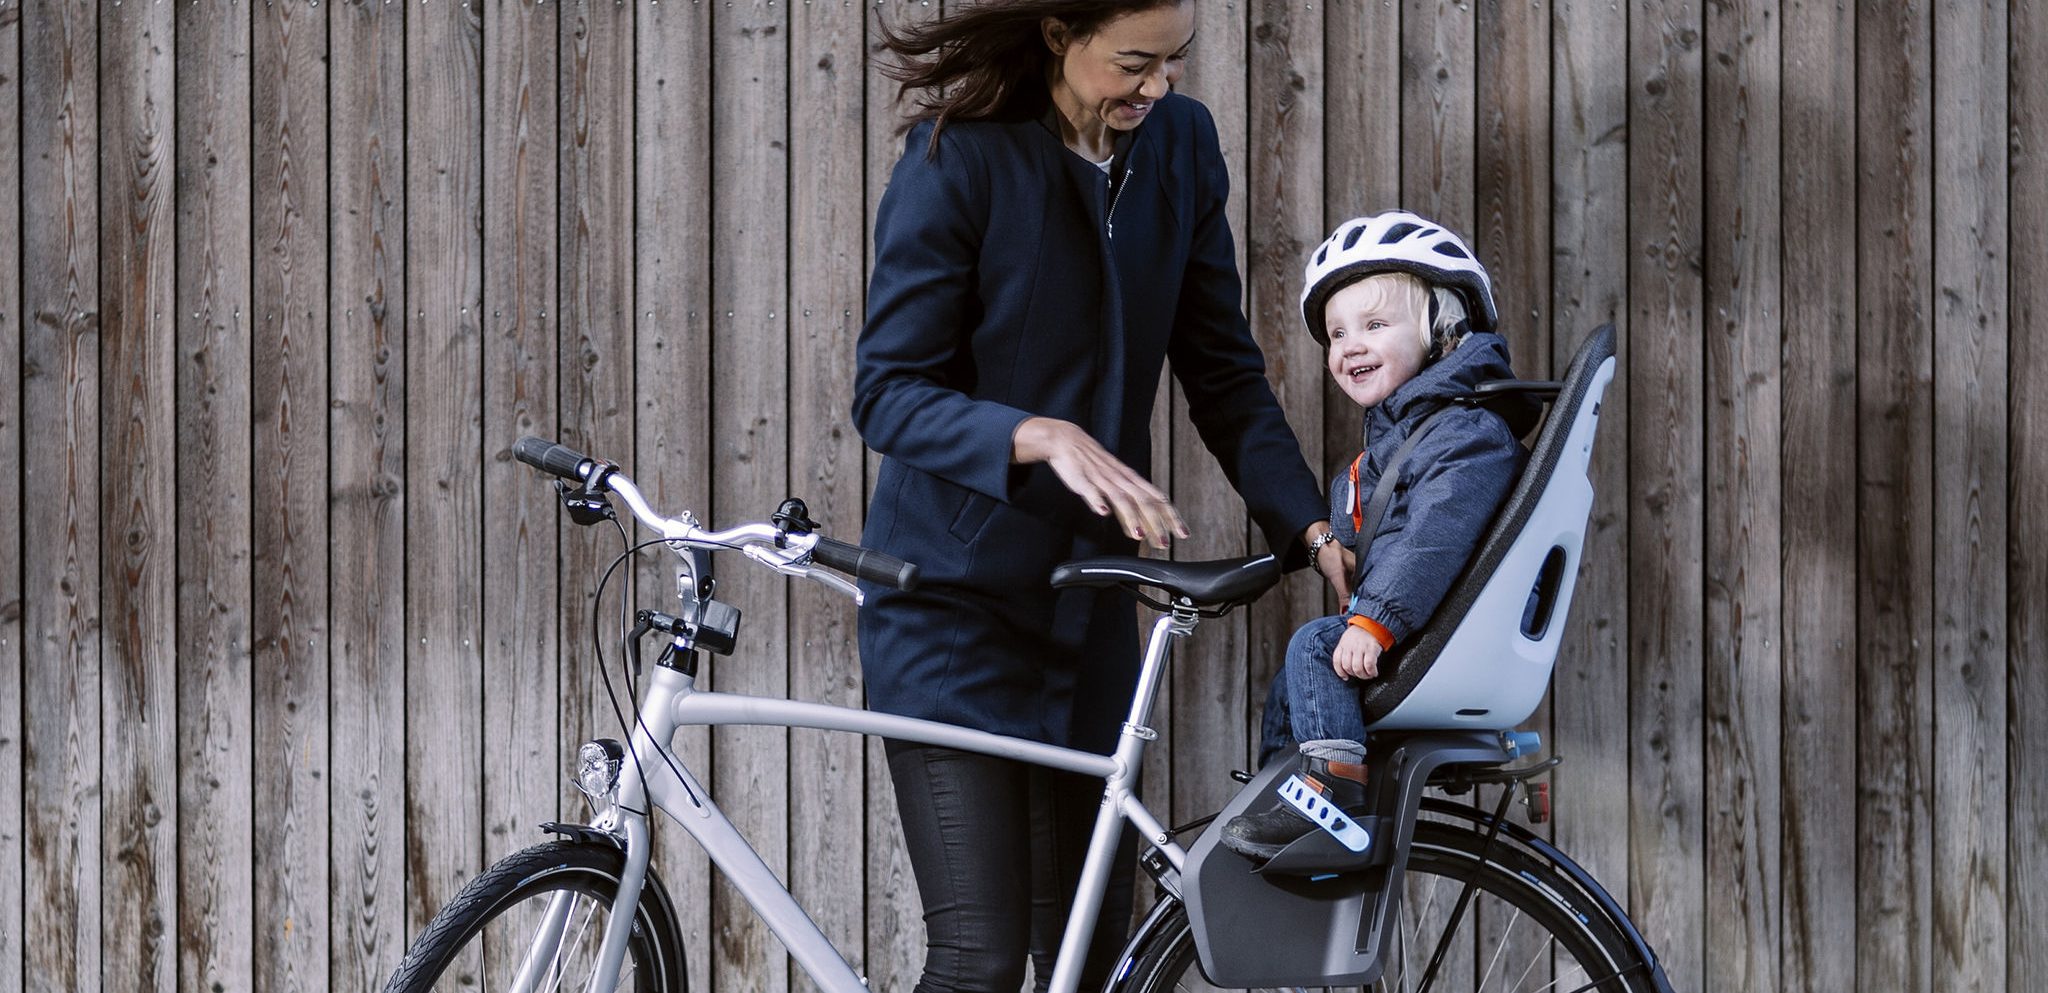 Comment choisir un porte-bébé vélo image